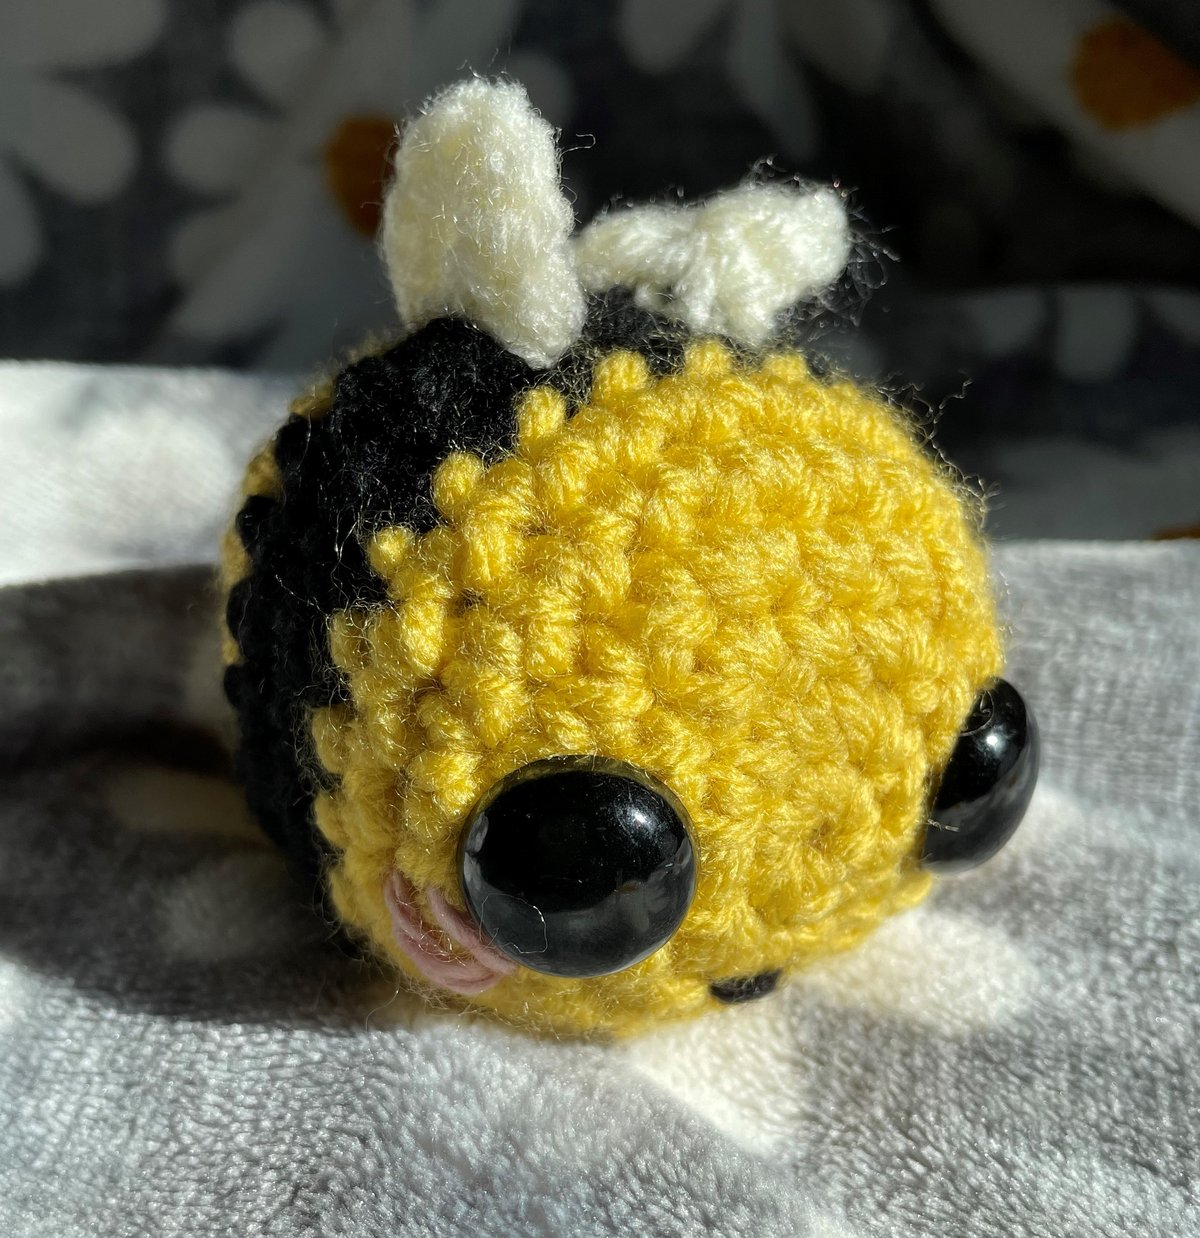 Image of Mini Crochet Bee